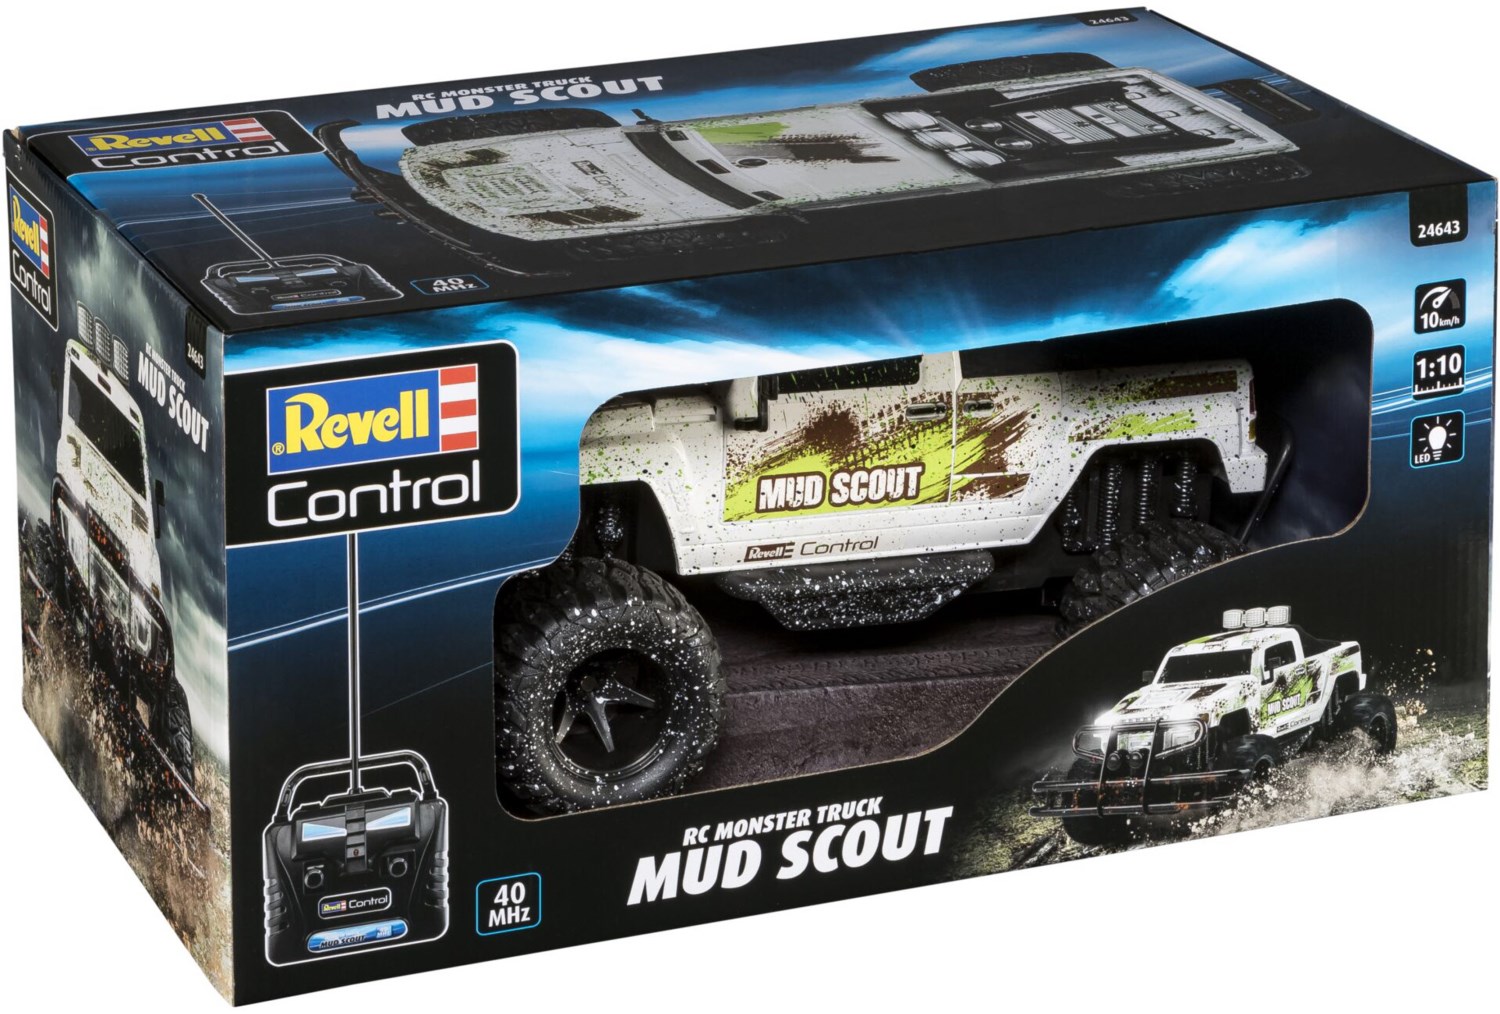 Revell Control 24643 New Mud Scout 1:10 Automodello Per Principianti Elettrica